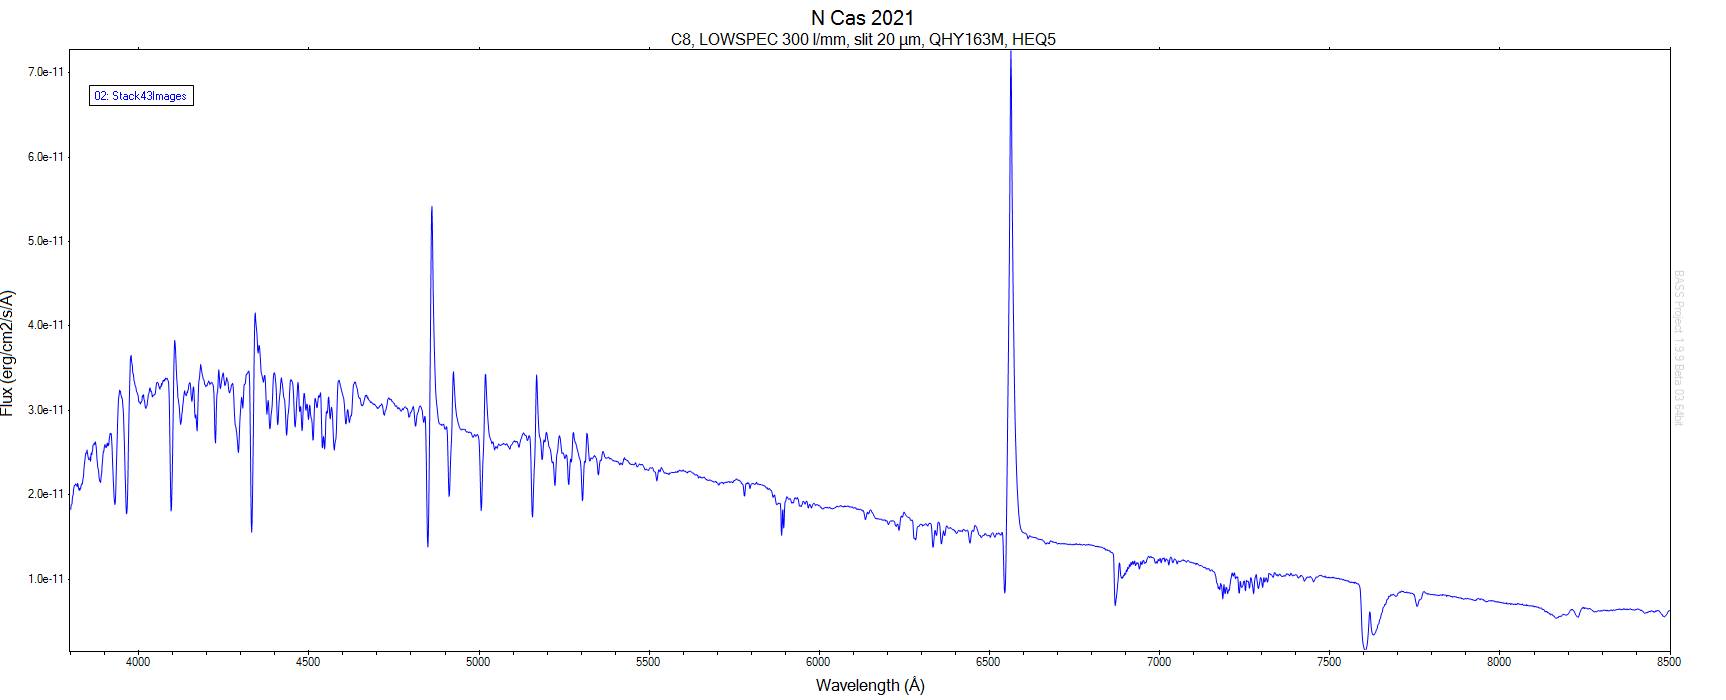 Widmo nowej V1405 Cas w zakresie λ 3900-8000Å z nocy 8/9 maja 2021 r. wykonane przez Mariusza Bajera za pomocą spektrografu LOWSPEC wydrukowanego w technologii 3D. Spektrograf LOWSPEC z kamerą CMOS QHY163M współpracuje z teleskopem Schmidta-Cassegraina f/10 o aperturze 20 cm. Została użyta siatka dyfrakcyjna 300 linii/mm i szczelina o szerokości 20 µm. W tej konfiguracji przy długości fali linii Hα spektrograf charakteryzuje się rozdzielczością R=λ/Δλ ~ 1500